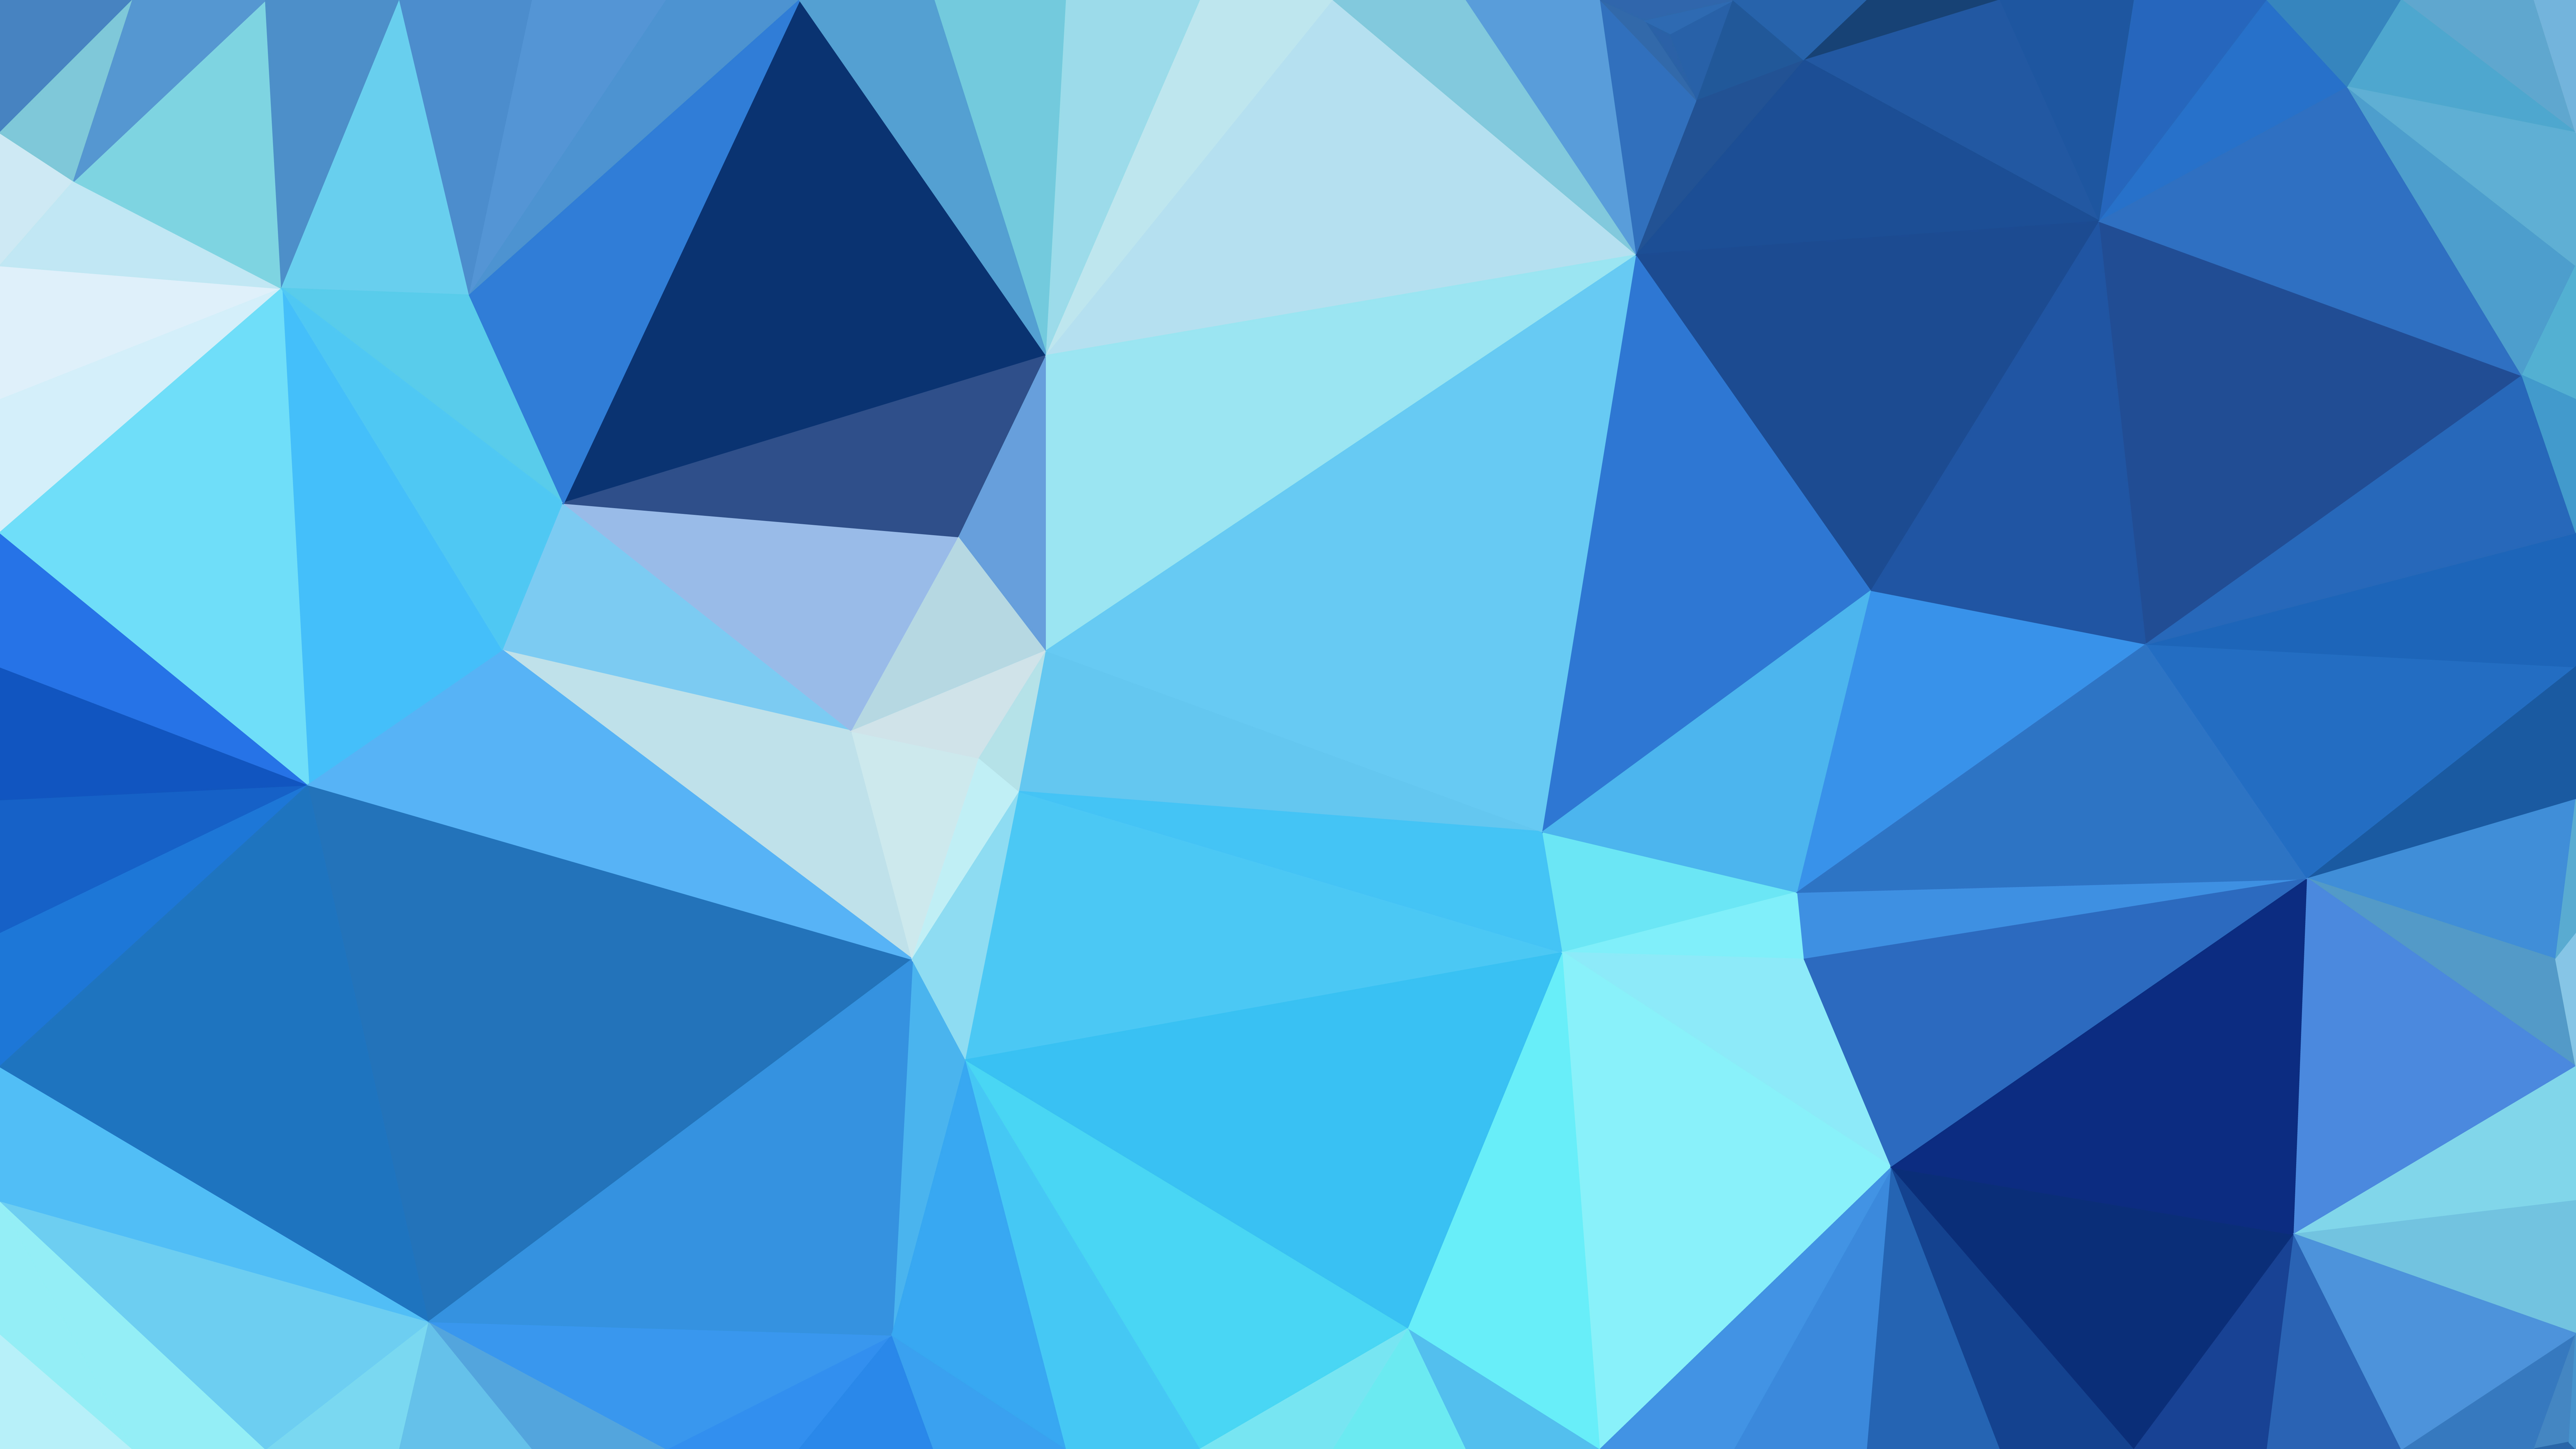 Hình nền tam giác xanh trừu tượng: Hãy ngắm nhìn hình nền tam giác xanh trừu tượng này để cảm nhận sự tươi trẻ và sáng tạo. Màu xanh tươi cùng những hình tam giác phá cách tạo nên một hình nền độc đáo và ấn tượng. Hãy để chúng thắp sáng không gian của bạn!